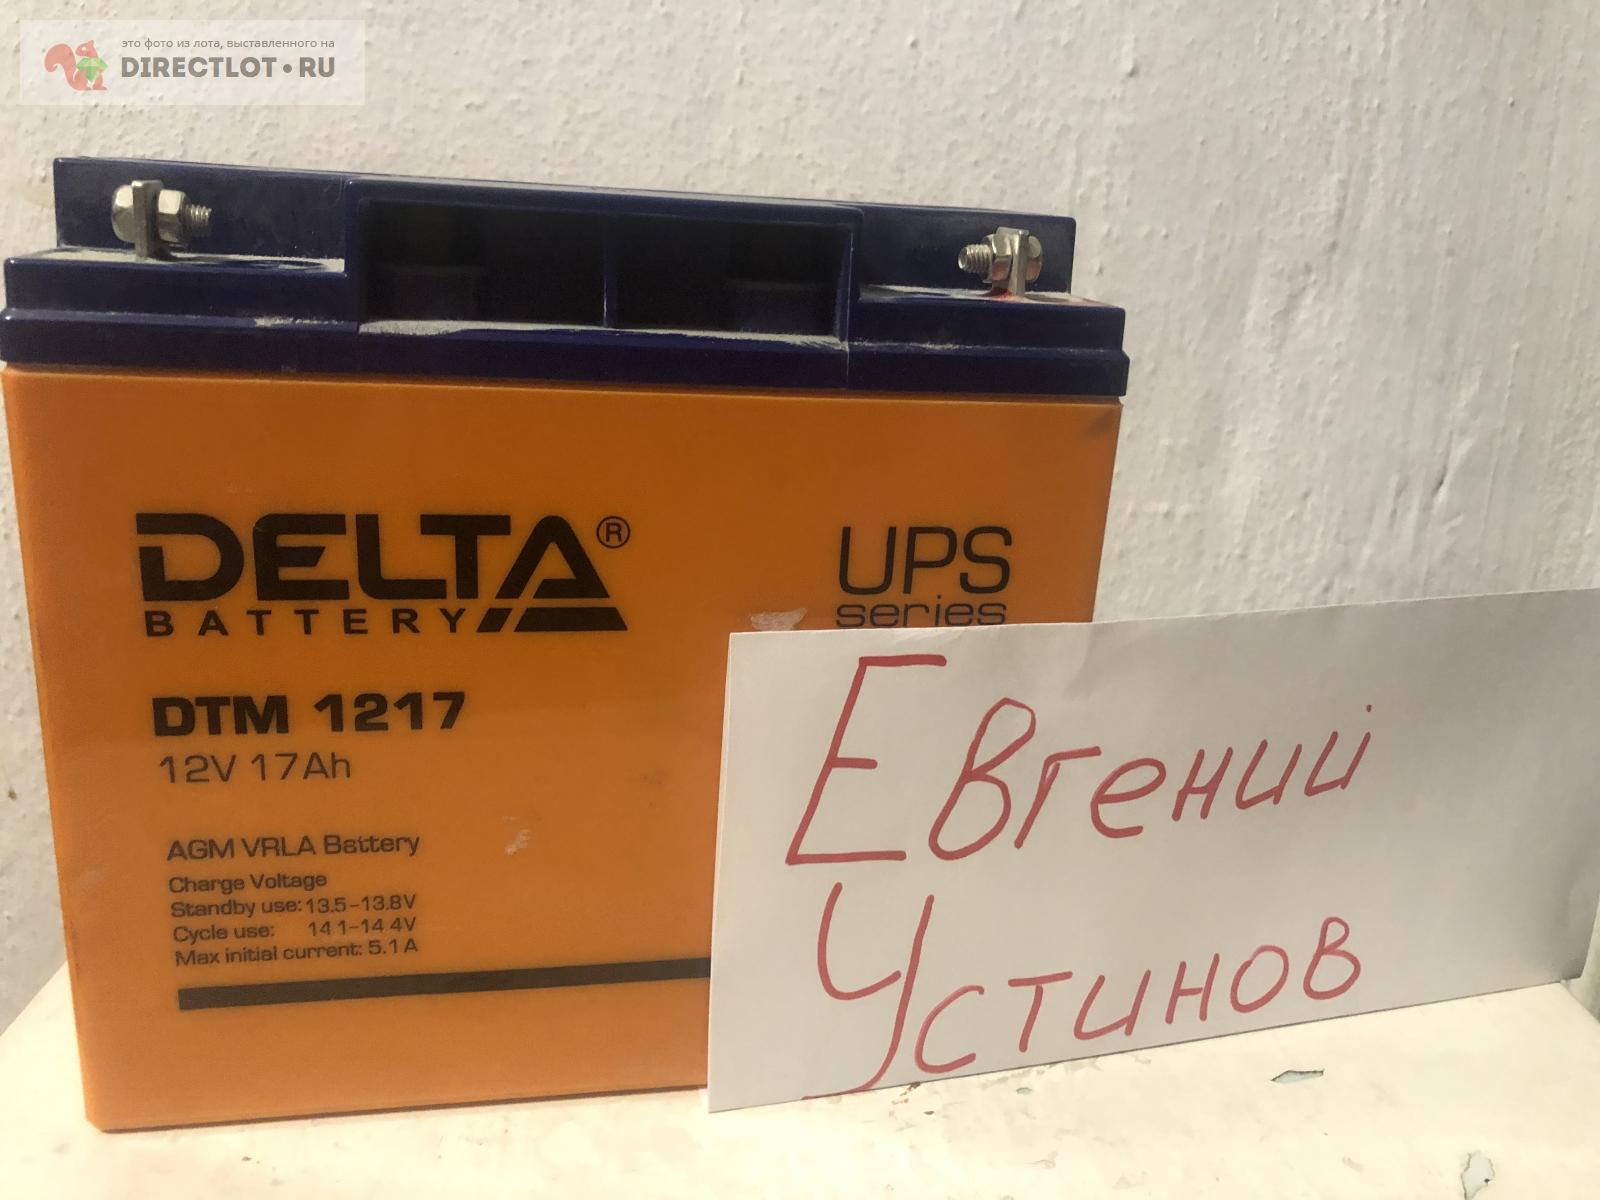 Продам Аккумуляторная батарея Delta DTM 1217 (12V / 17Ah)  на .